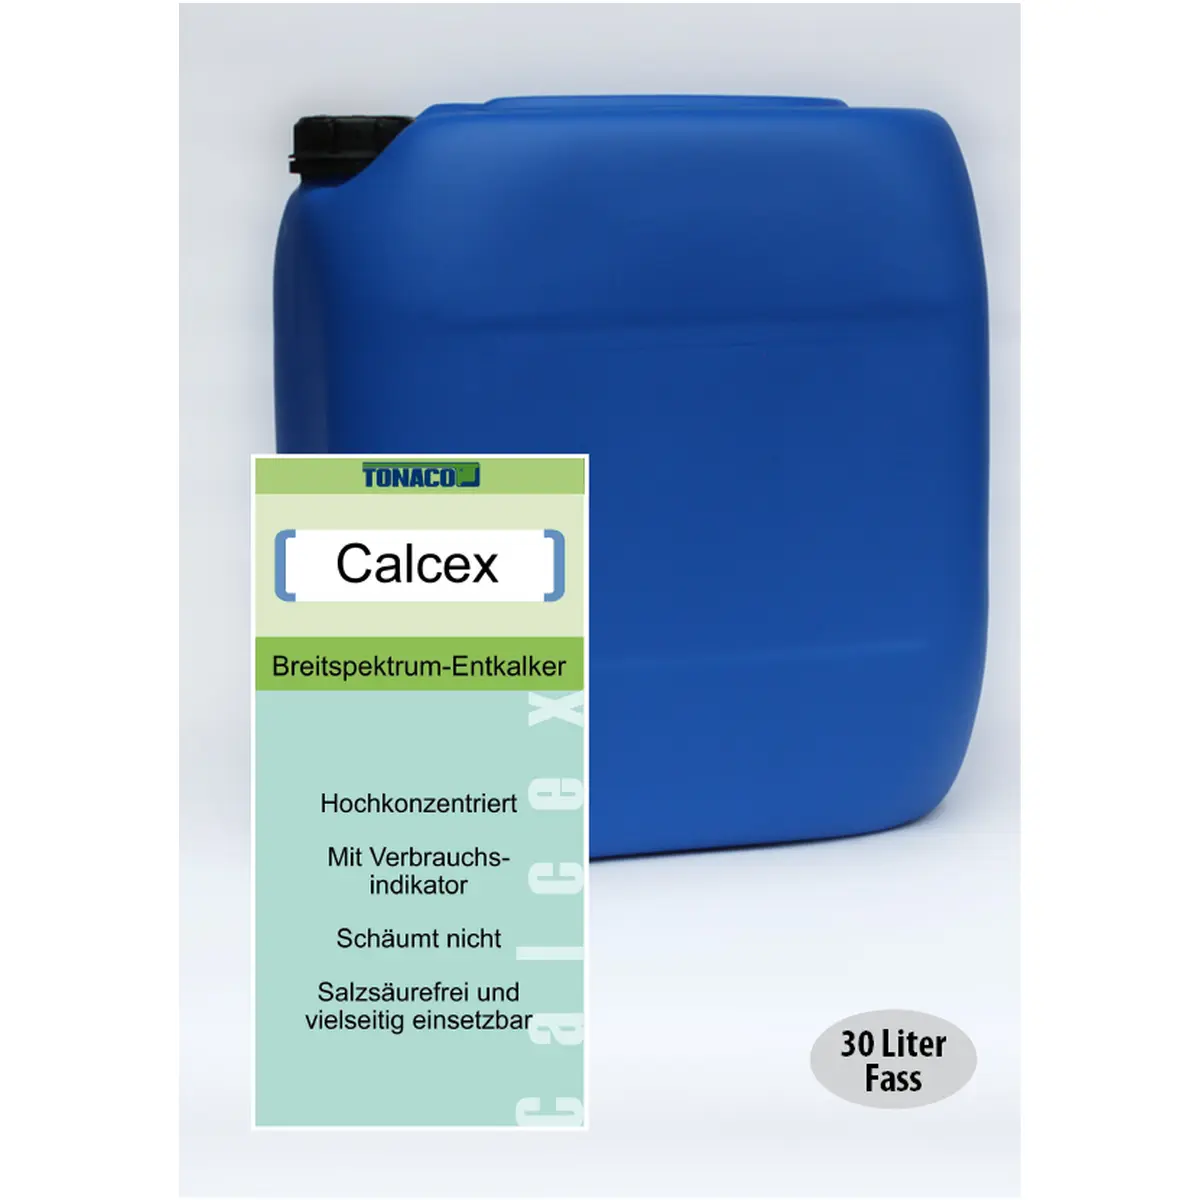 CALCEX Entkalkung allgemein saurer Reiniger, hochkonzentriert, 30L